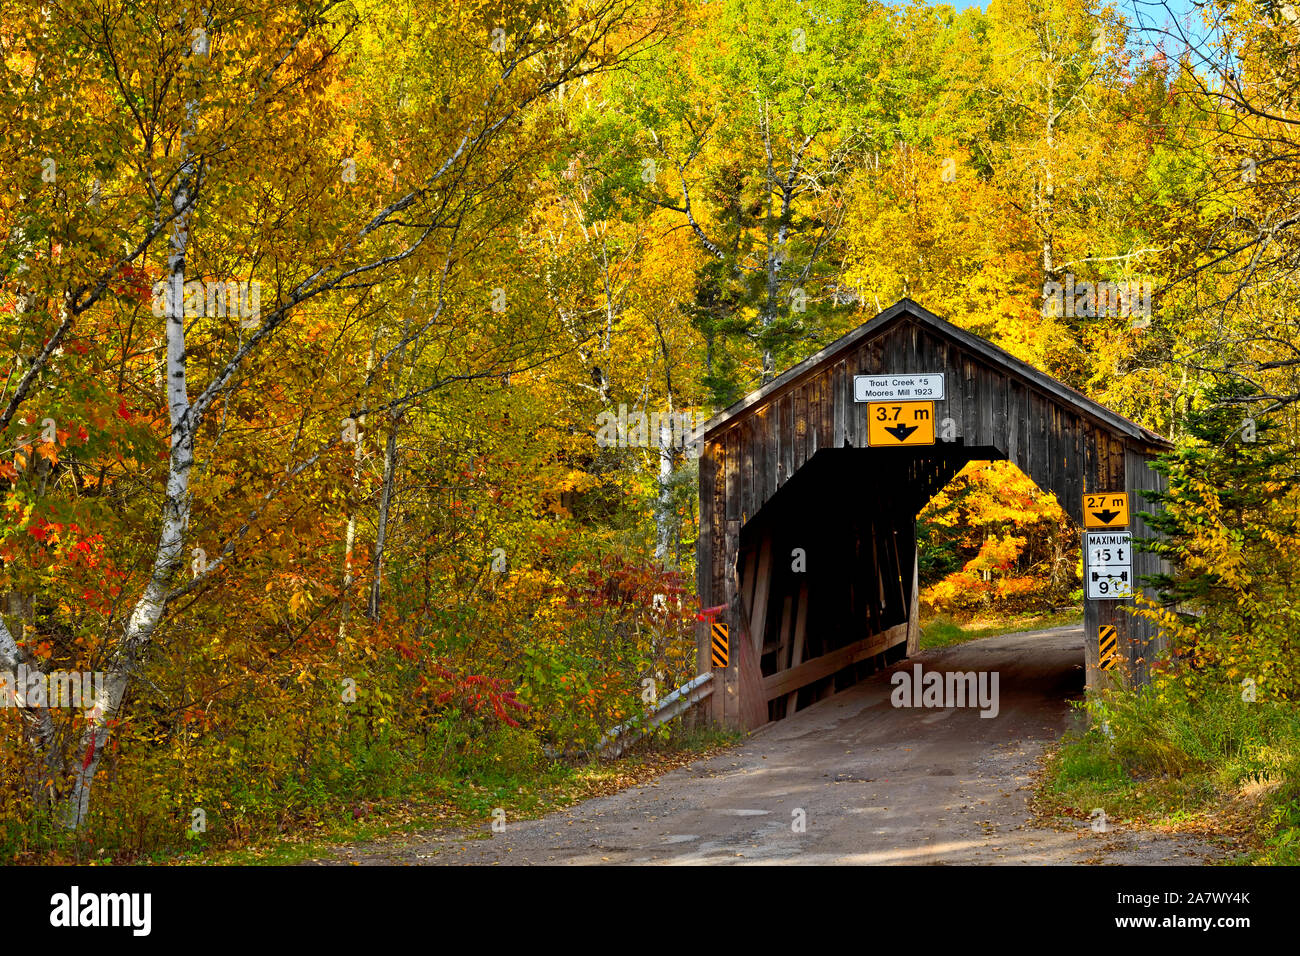 Ein Herbst Landschaft Bild von einem ikonischen Covered Bridge crossing Trout Creek auf einer Schotterstraße in der Nähe des ländlichen Sussex New Brunswick Kanada. Stockfoto